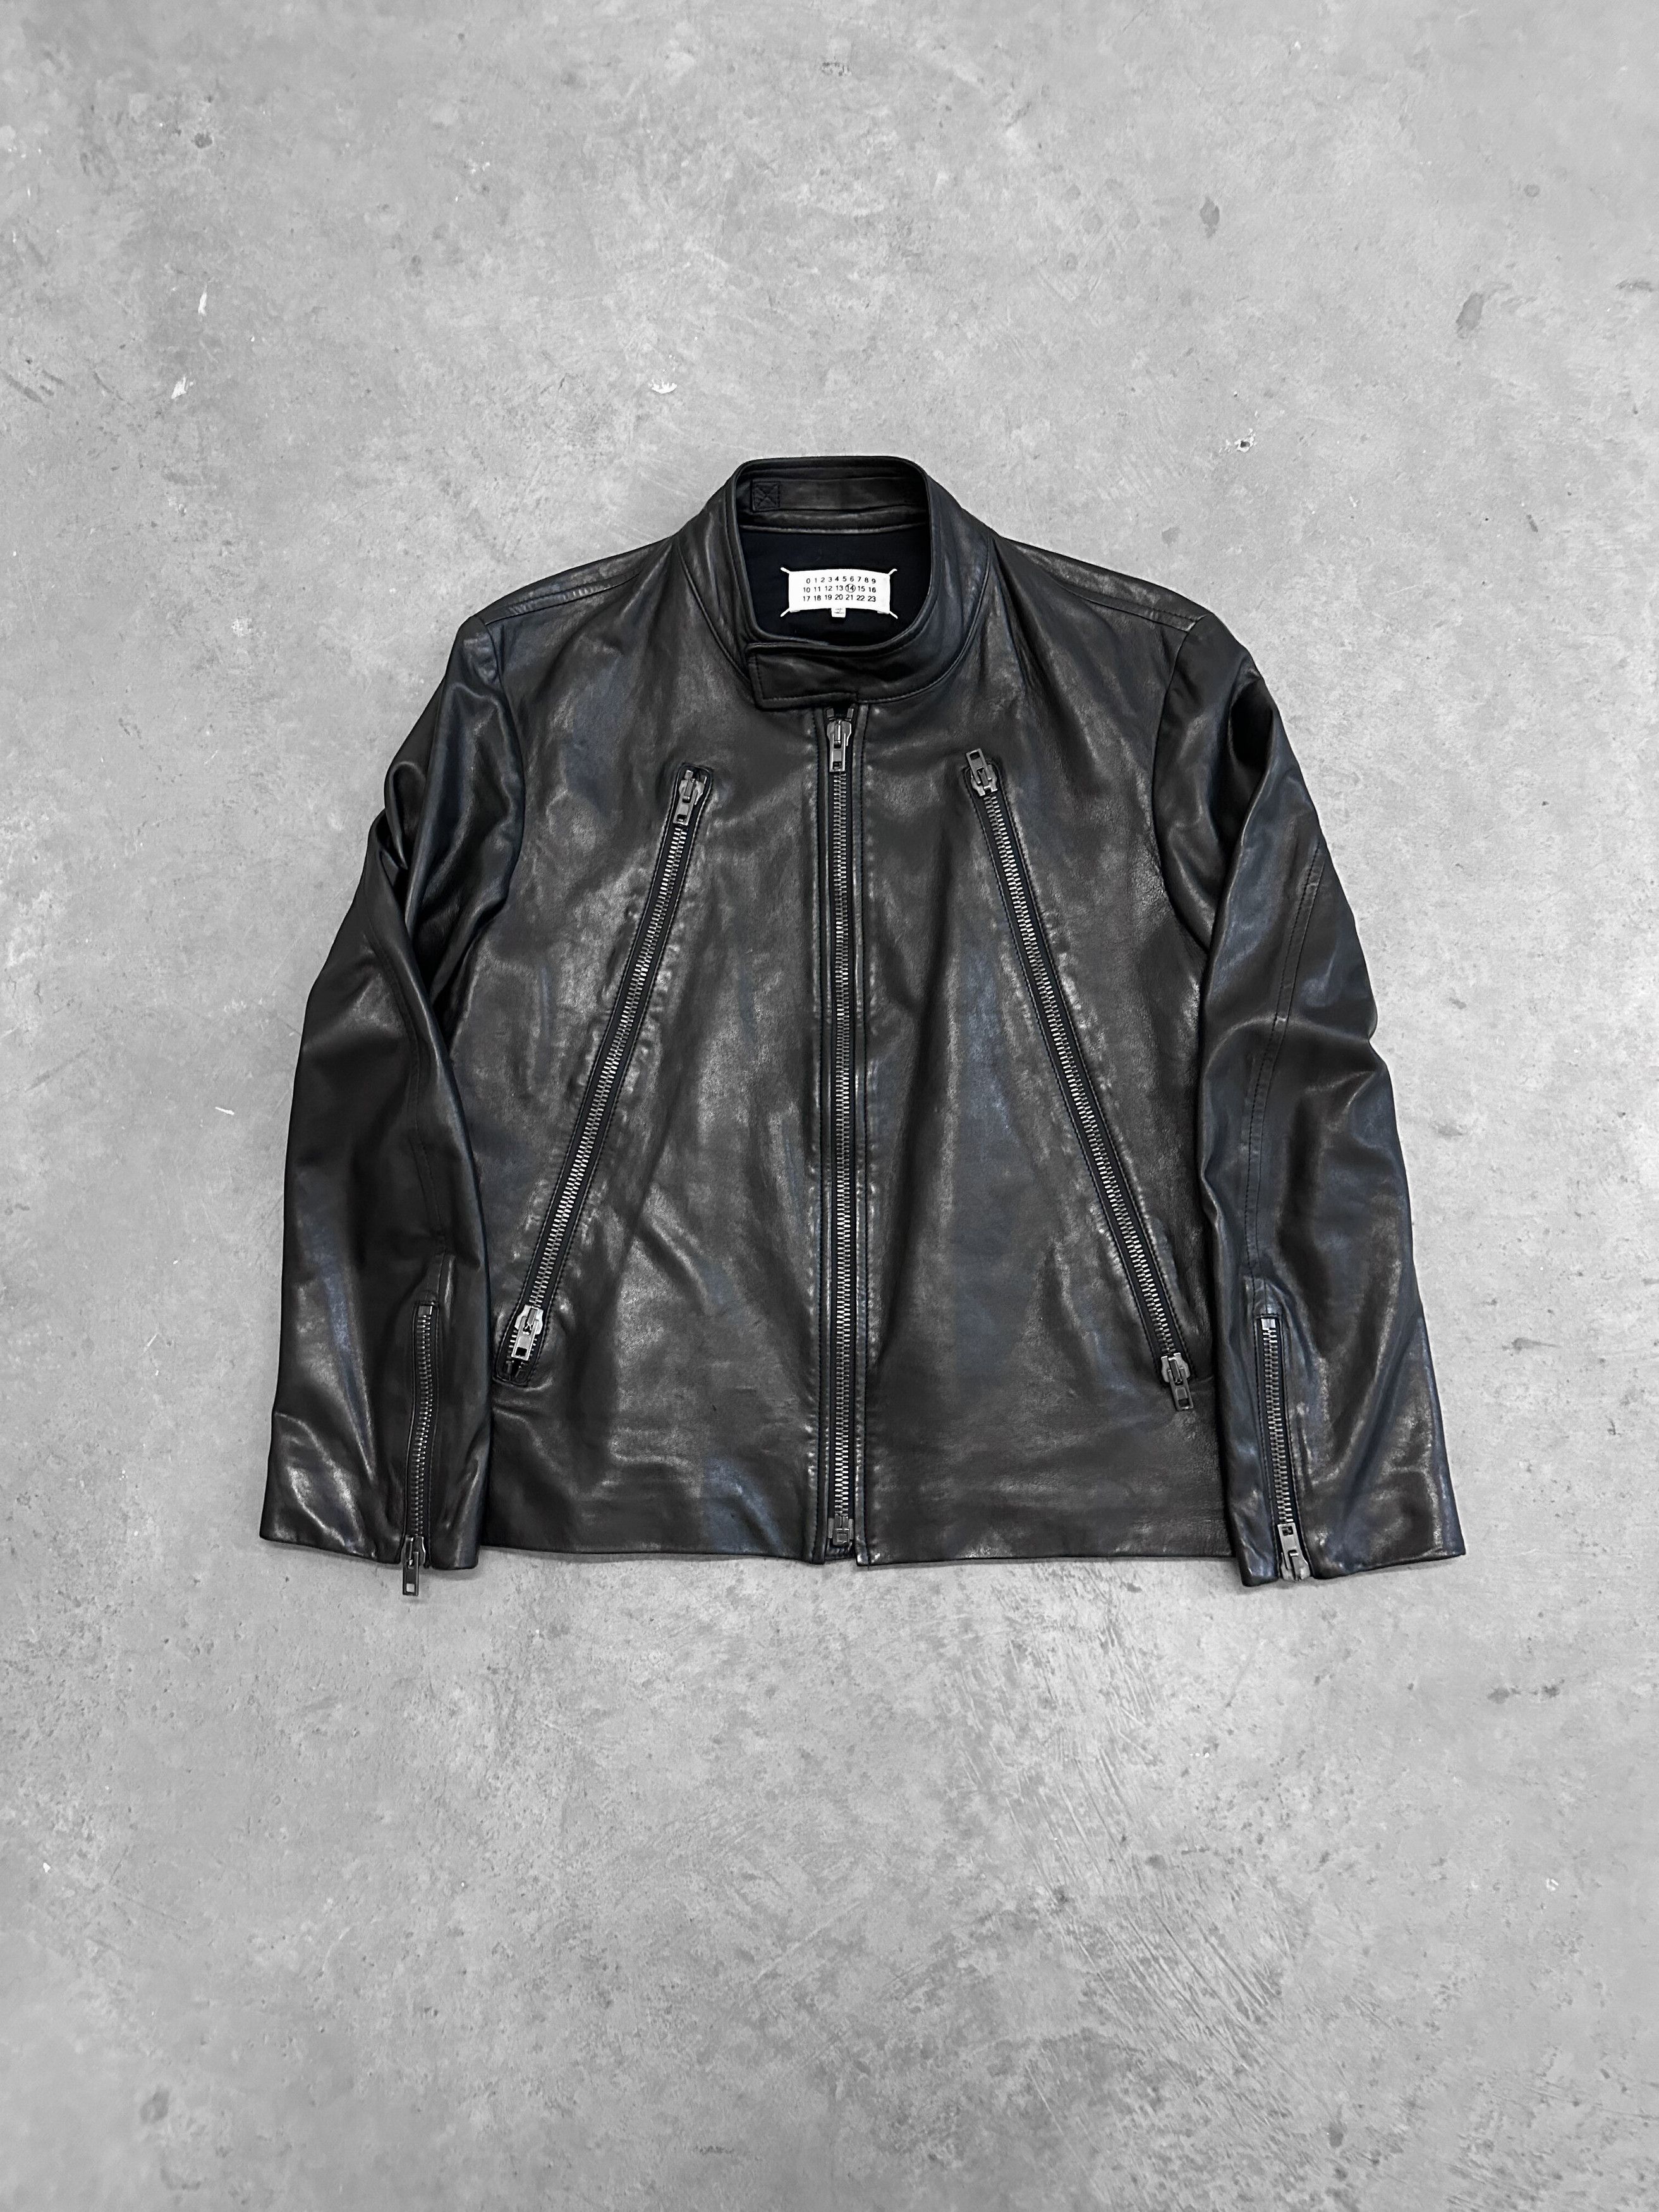 Maison Margiela 5 Zip Leather Jacket | Grailed